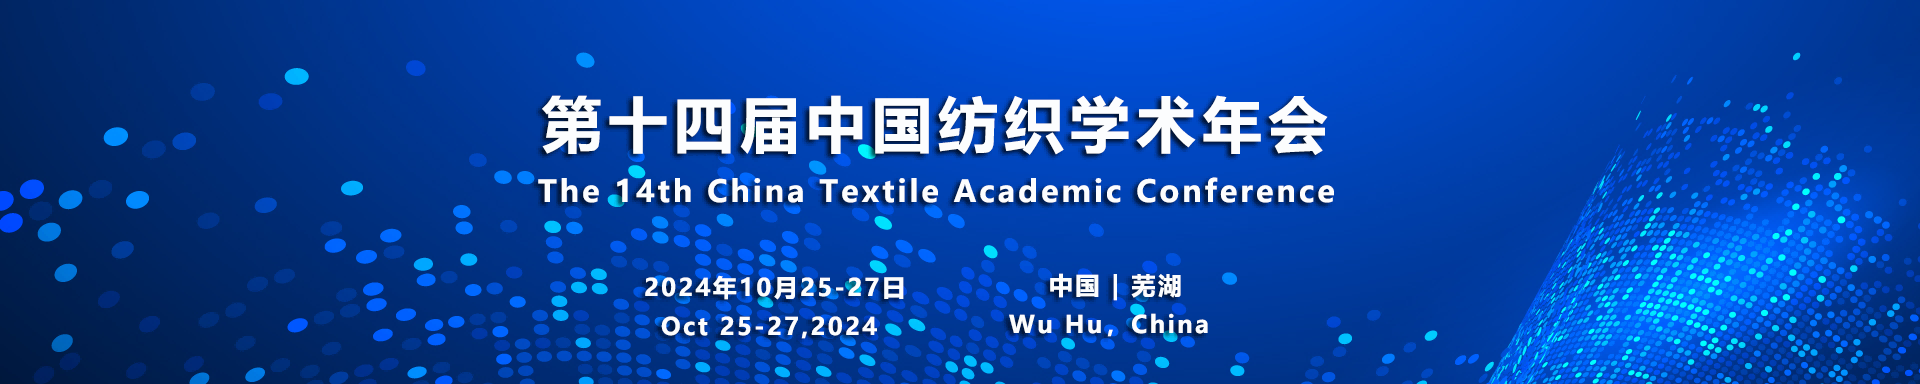 组织机构 - 第十四届中国纺织学术年会